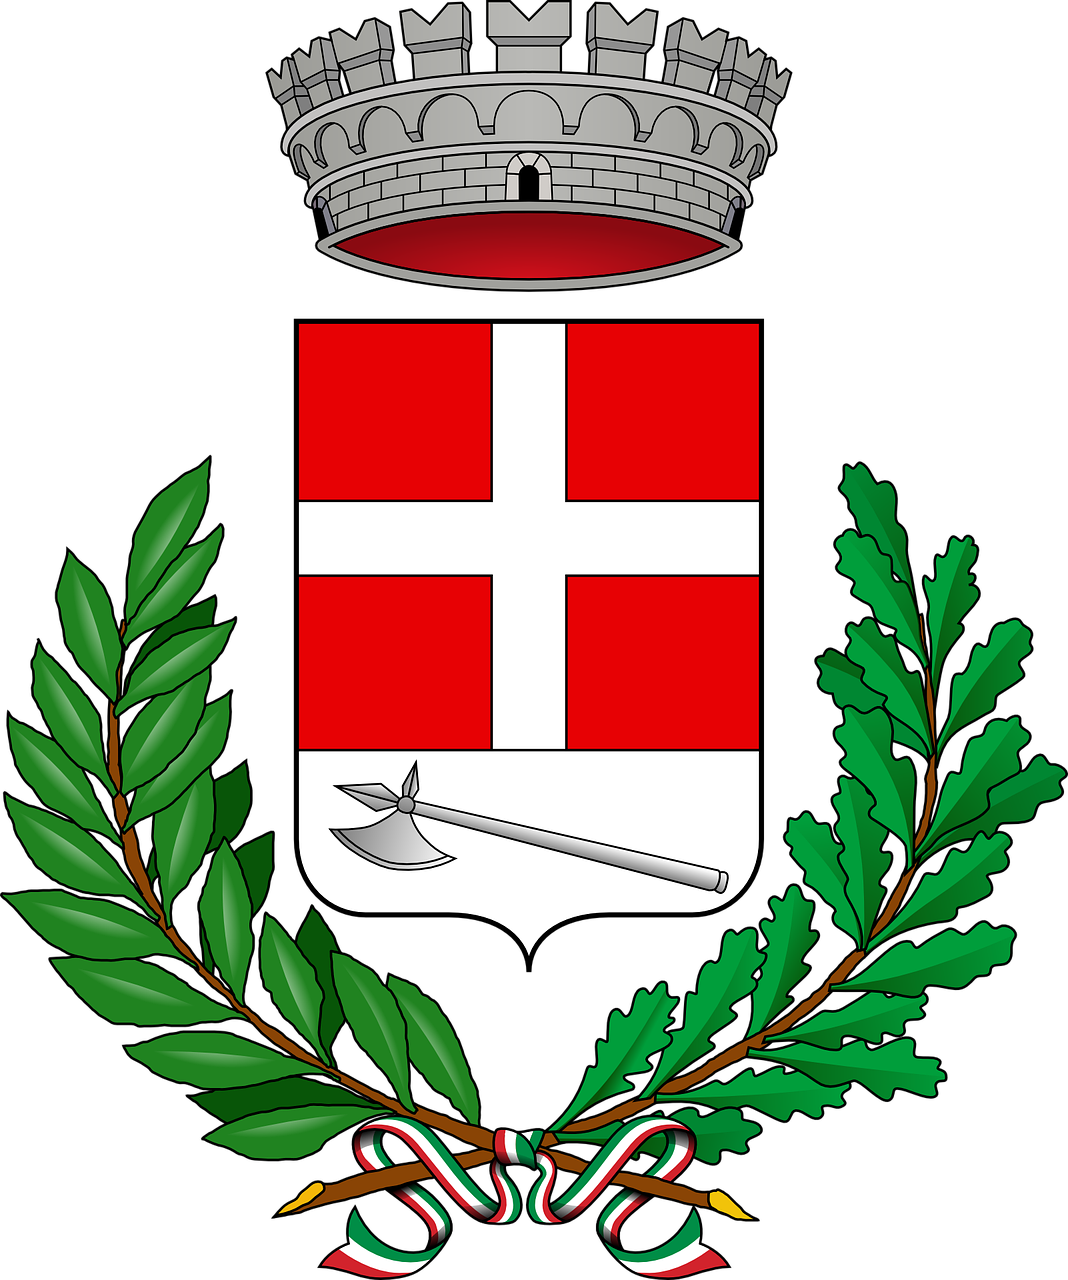 azzano d'asti coat of arms symbol free photo